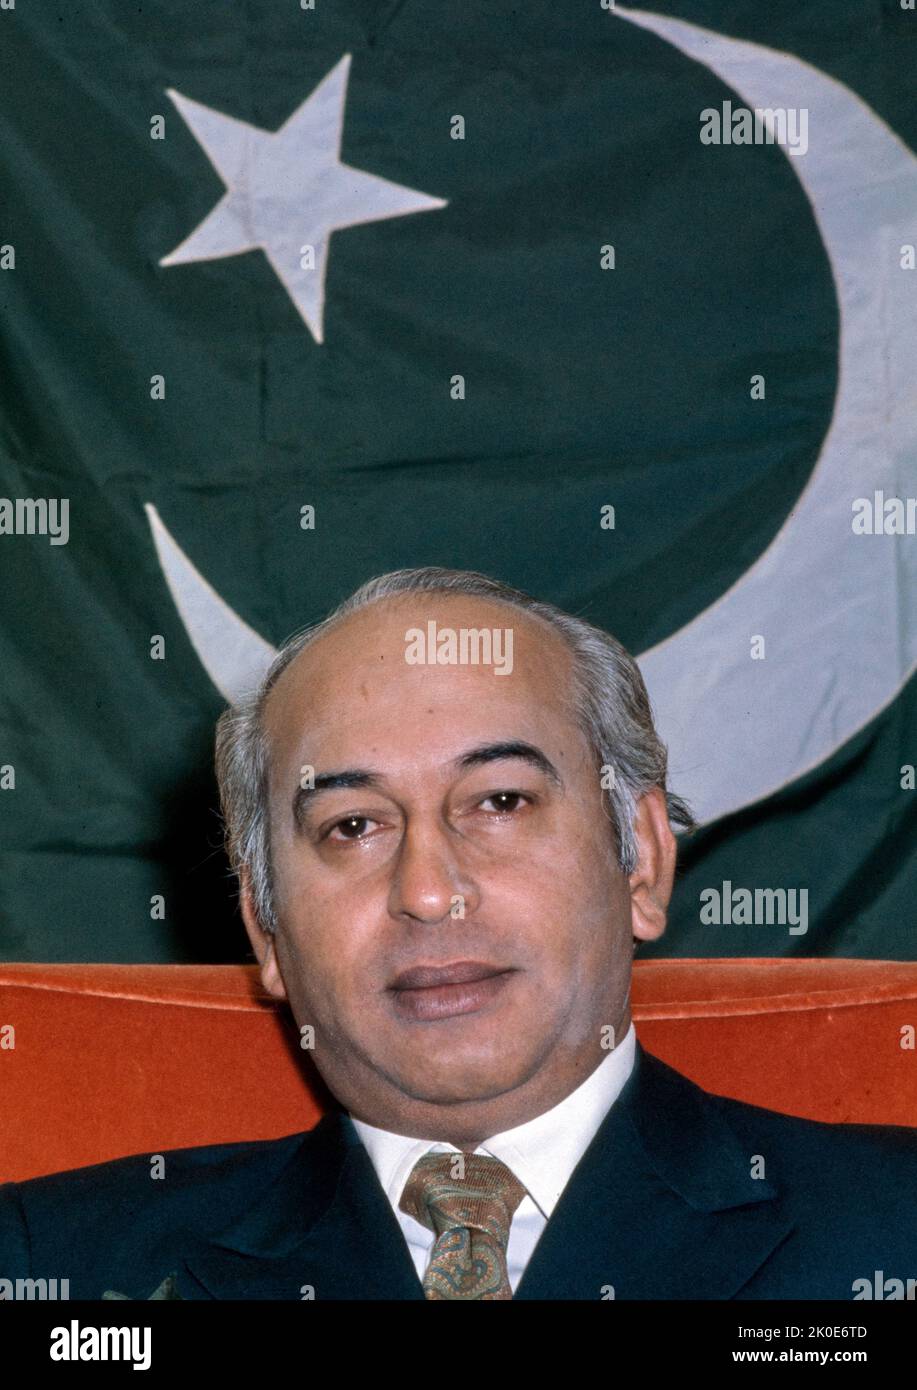 Shaheed Zulfiqar Ali Bhutto (1928 - 1979), pakistanischer Rechtsanwalt und Politiker, der von 1973 bis 1977 als Premierminister Pakistans und davor als vierter Präsident Pakistans von 1971 bis 1973 diente. Er war auch der Gründer der Pakistanischen Volkspartei (PPP) und diente bis zu seiner Hinrichtung im Jahr 1979 als deren Vorsitzender. Stockfoto